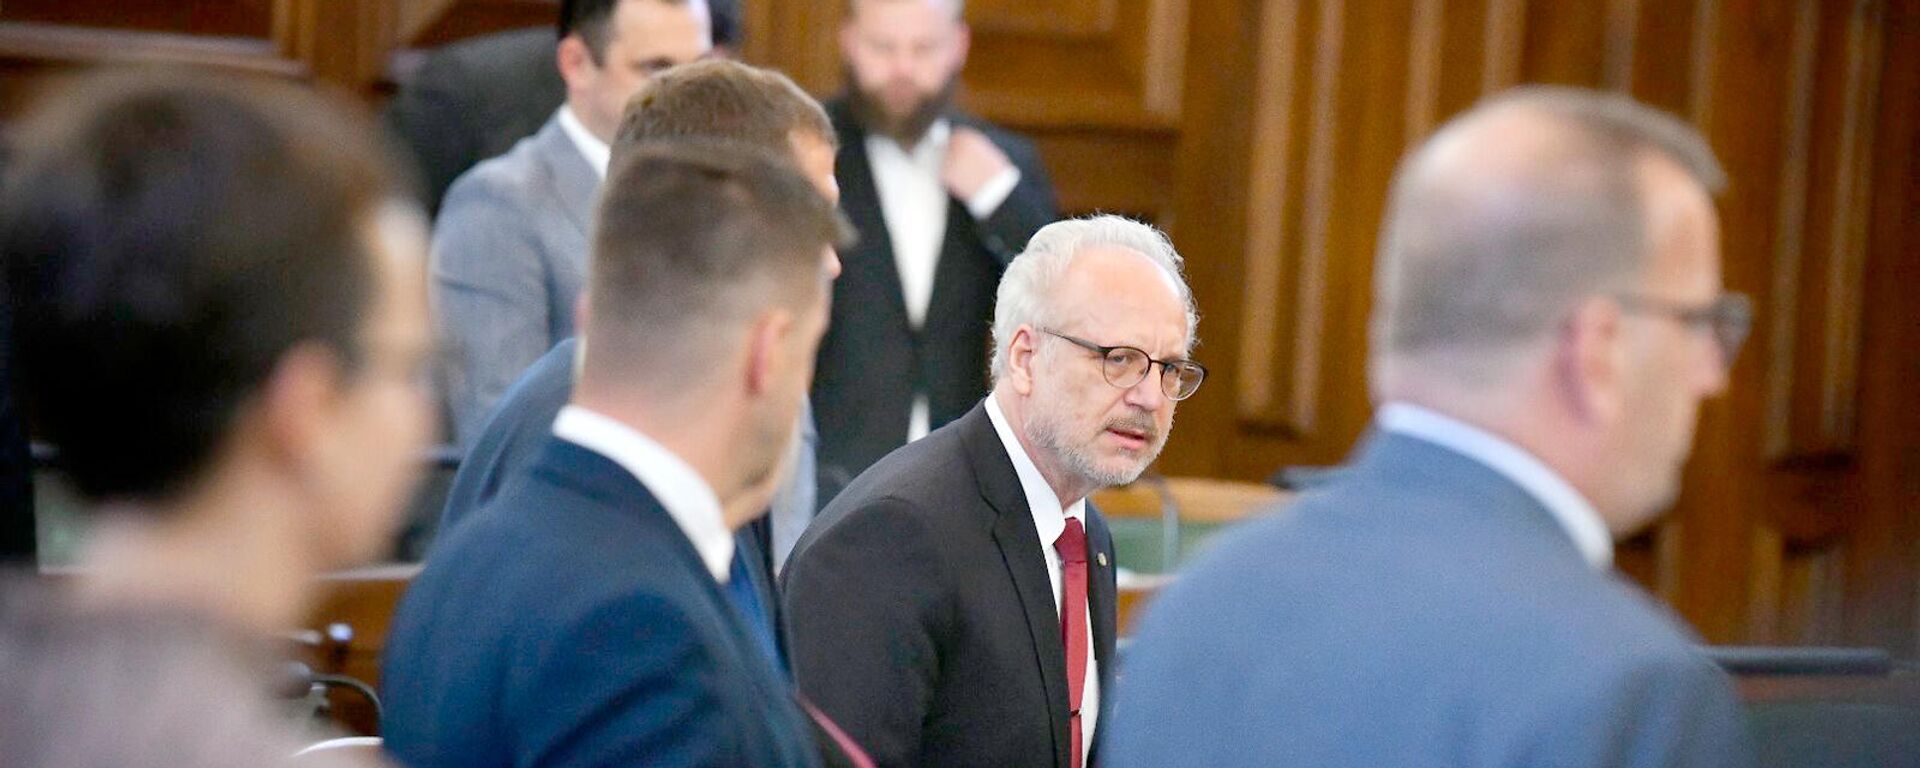 Президент Латвии Эгилс Левитс на первом очном заседании Сейма, 2 сентября 2021 года - Sputnik Латвия, 1920, 15.11.2021